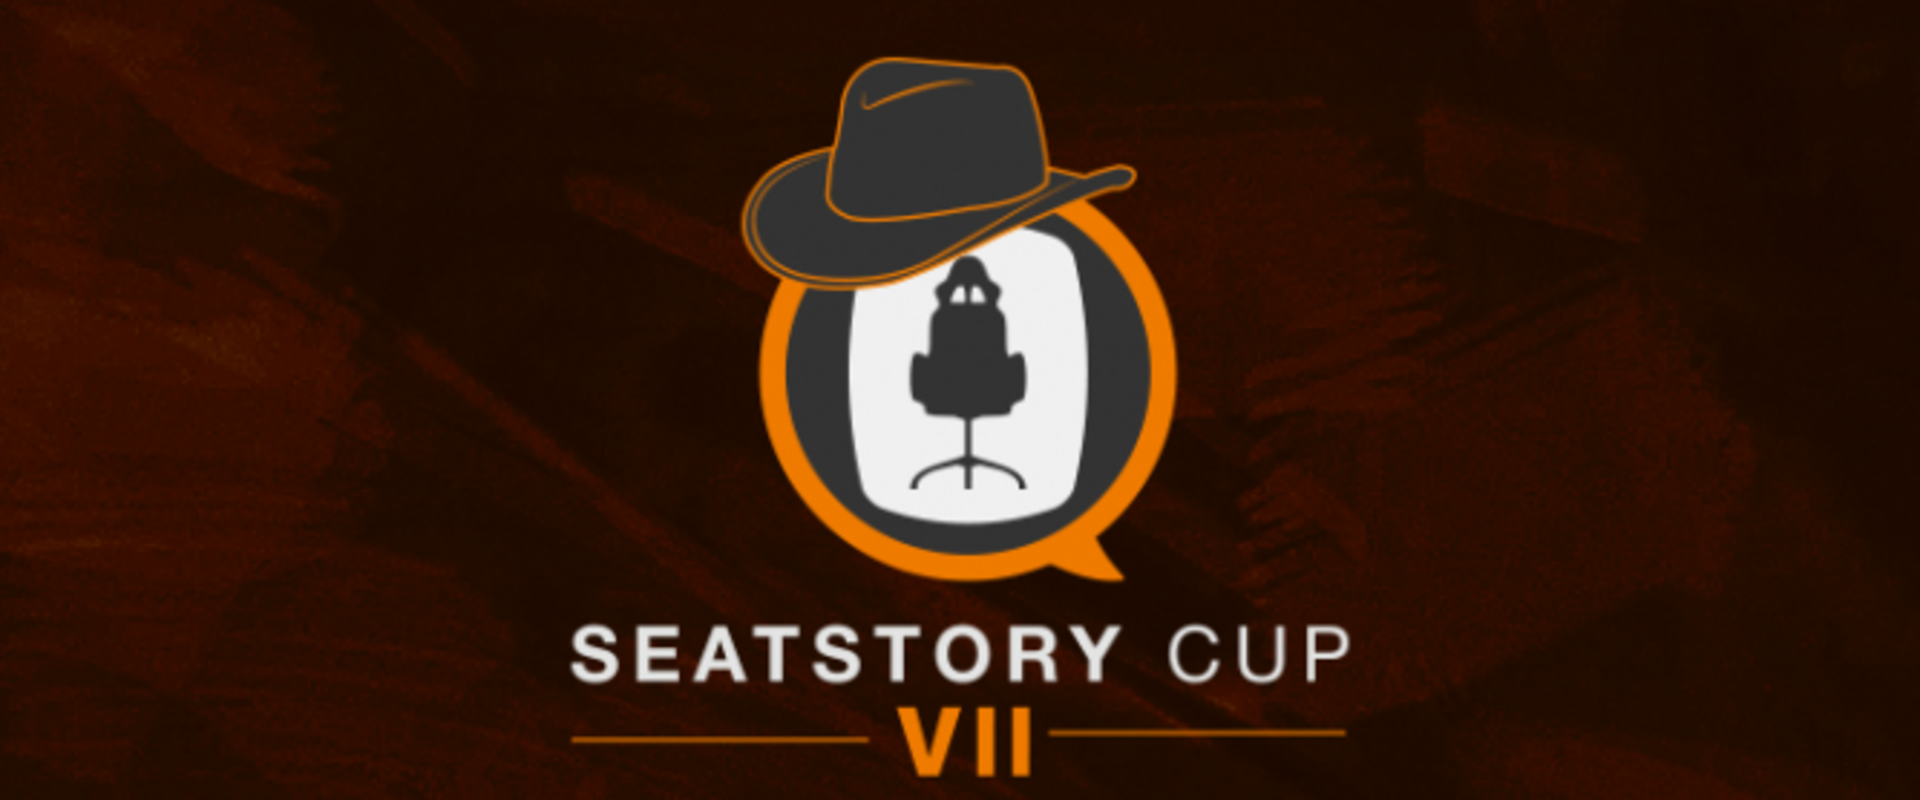 Véget ért a Seatstory Cup -Íme a statisztikák, és a legjobbak paklijai